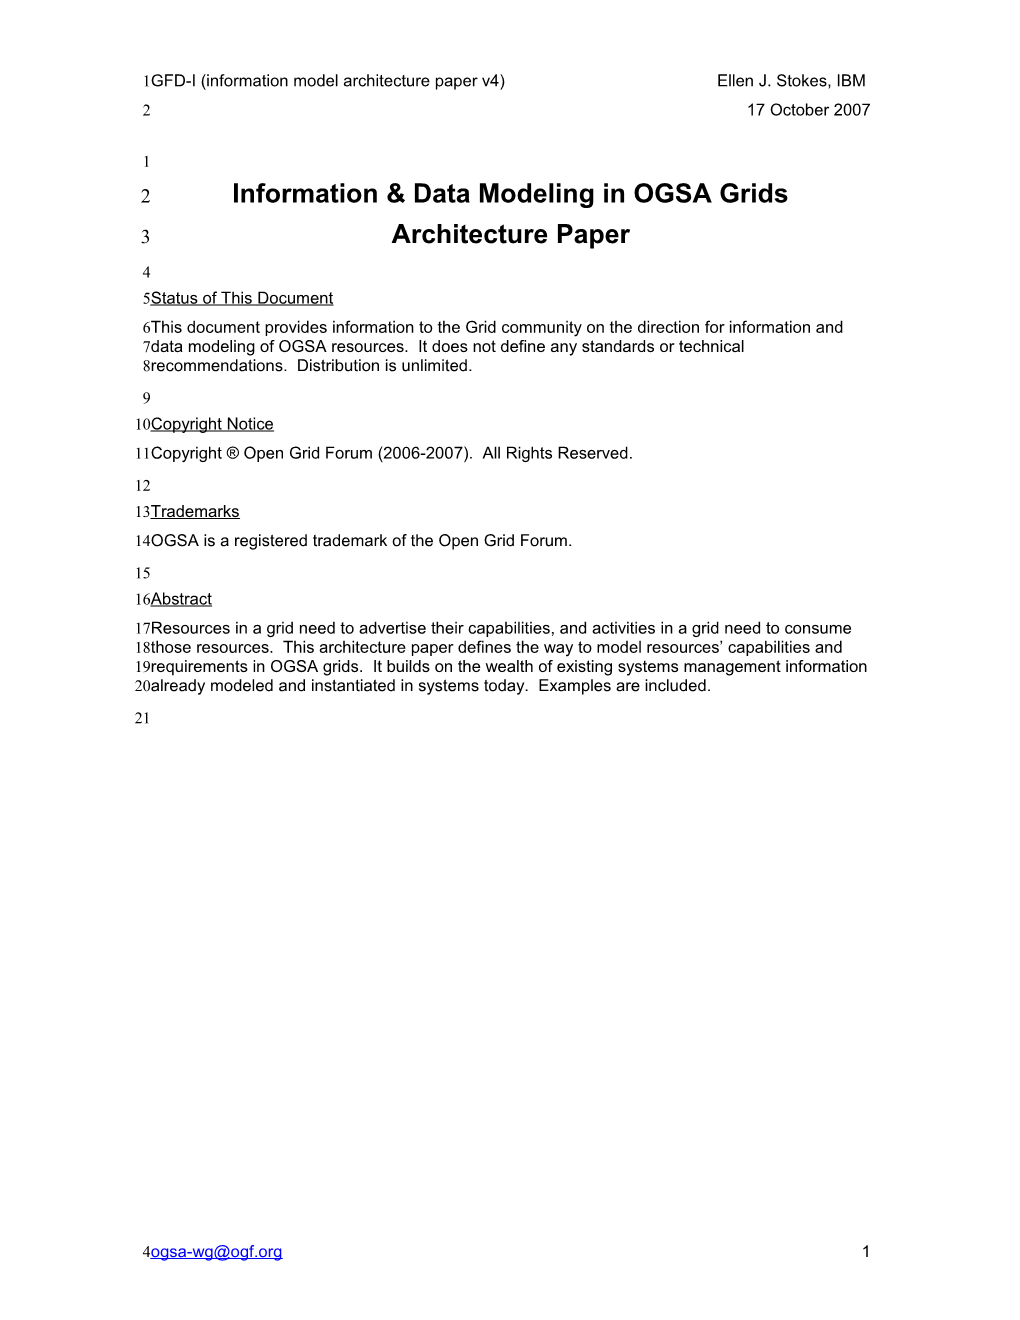 Info Modeling for OGSA - Position Paper